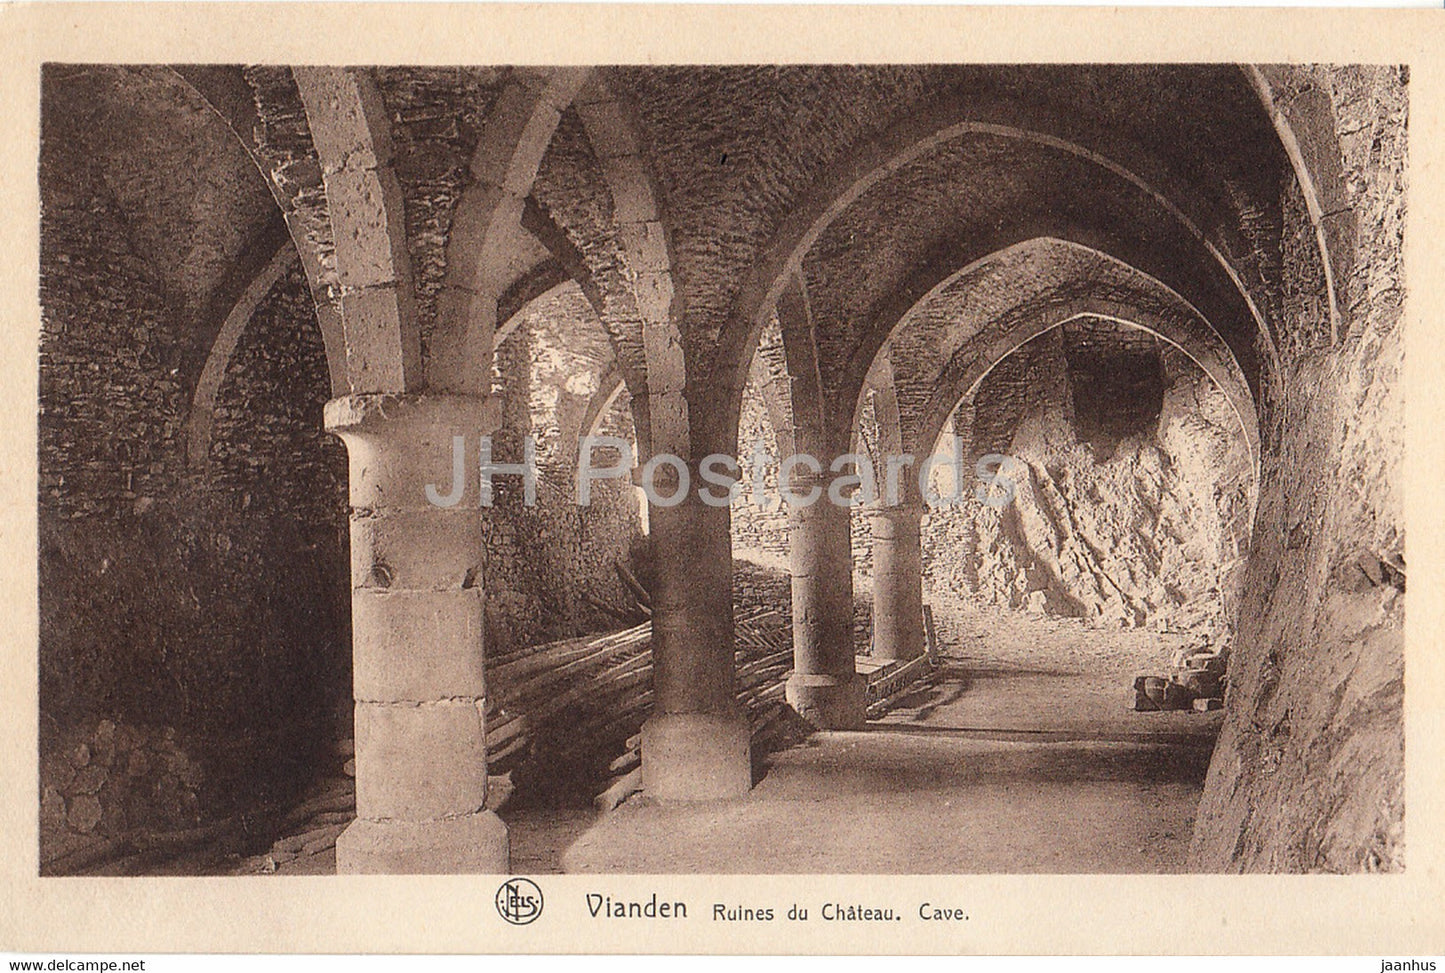 Vianden - Les Ruines du Chateau - cave - castle ruins - 10 - serie 6 - old postcard - Luxembourg - unused - JH Postcards